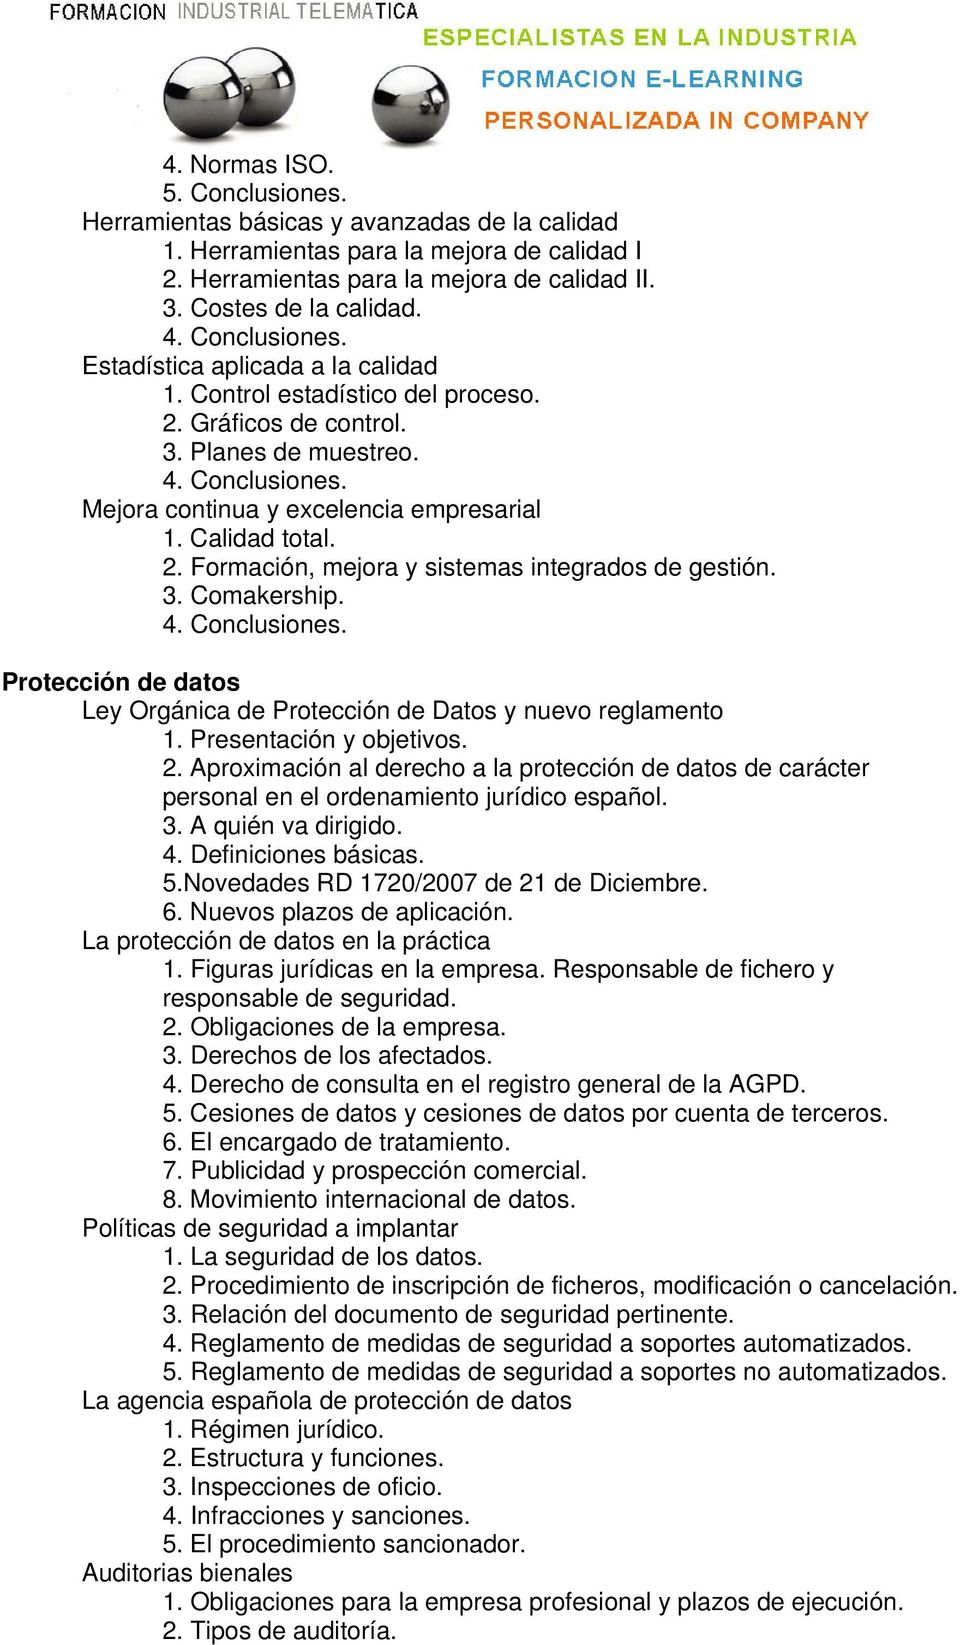 3. Comakership. Protección de datos Ley Orgánica de Protección de Datos y nuevo reglamento 2. Aproximación al derecho a la protección de datos de carácter personal en el ordenamiento jurídico español.